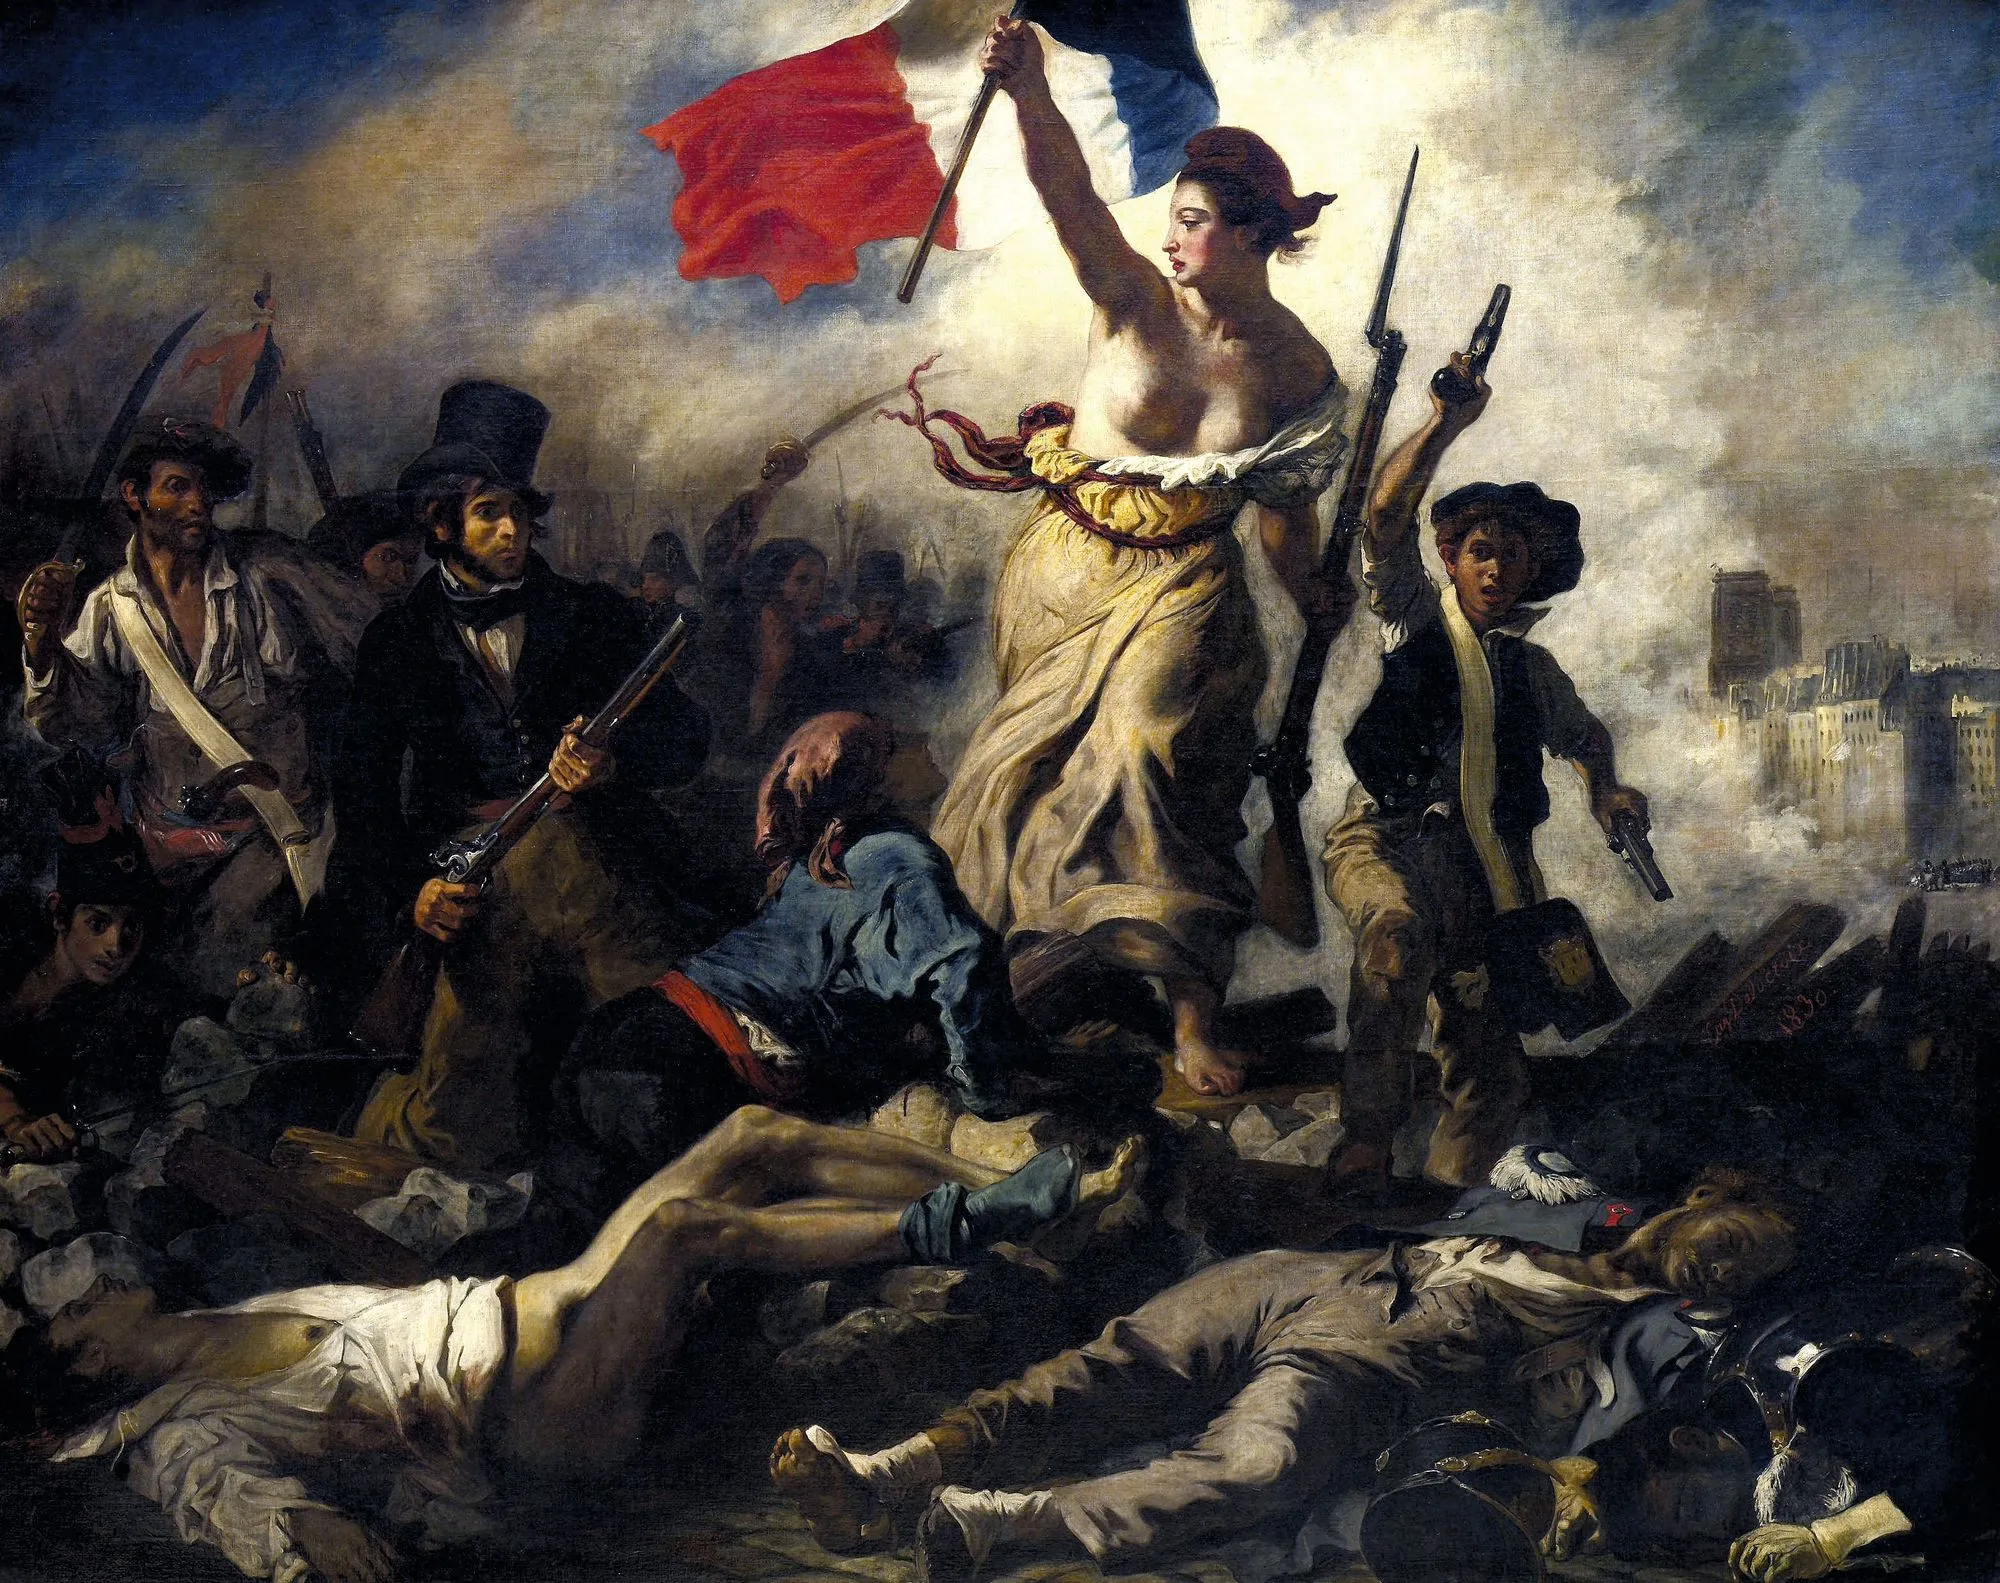 Eugène Delacroix, La Liberté guidant le peuple, 1830,
huile sur toile, 260 × 325 cm, musée du Louvre, Paris.